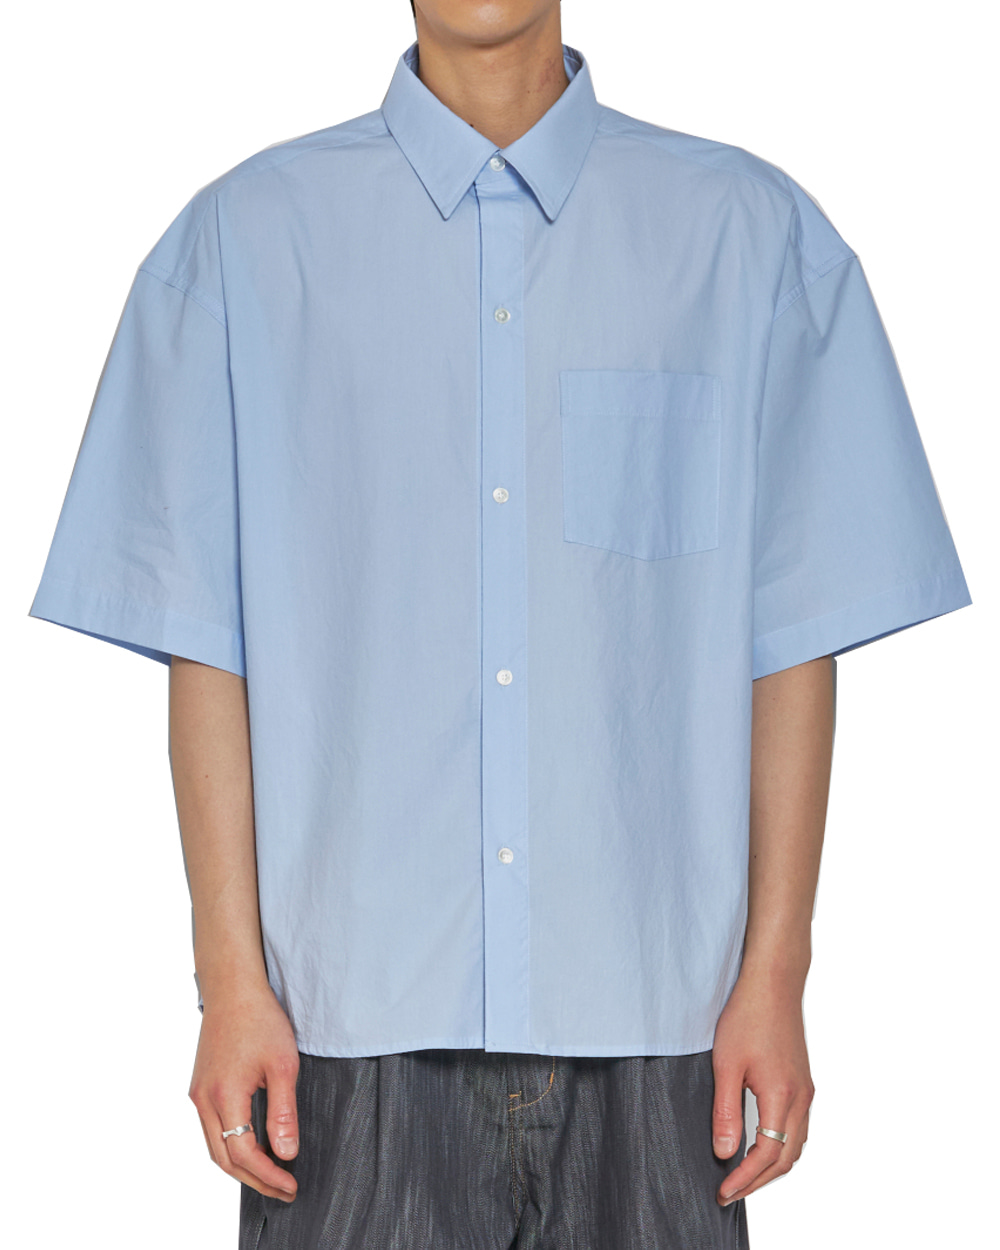 마티스더큐레이터 Regular half shirts (Sky blue)